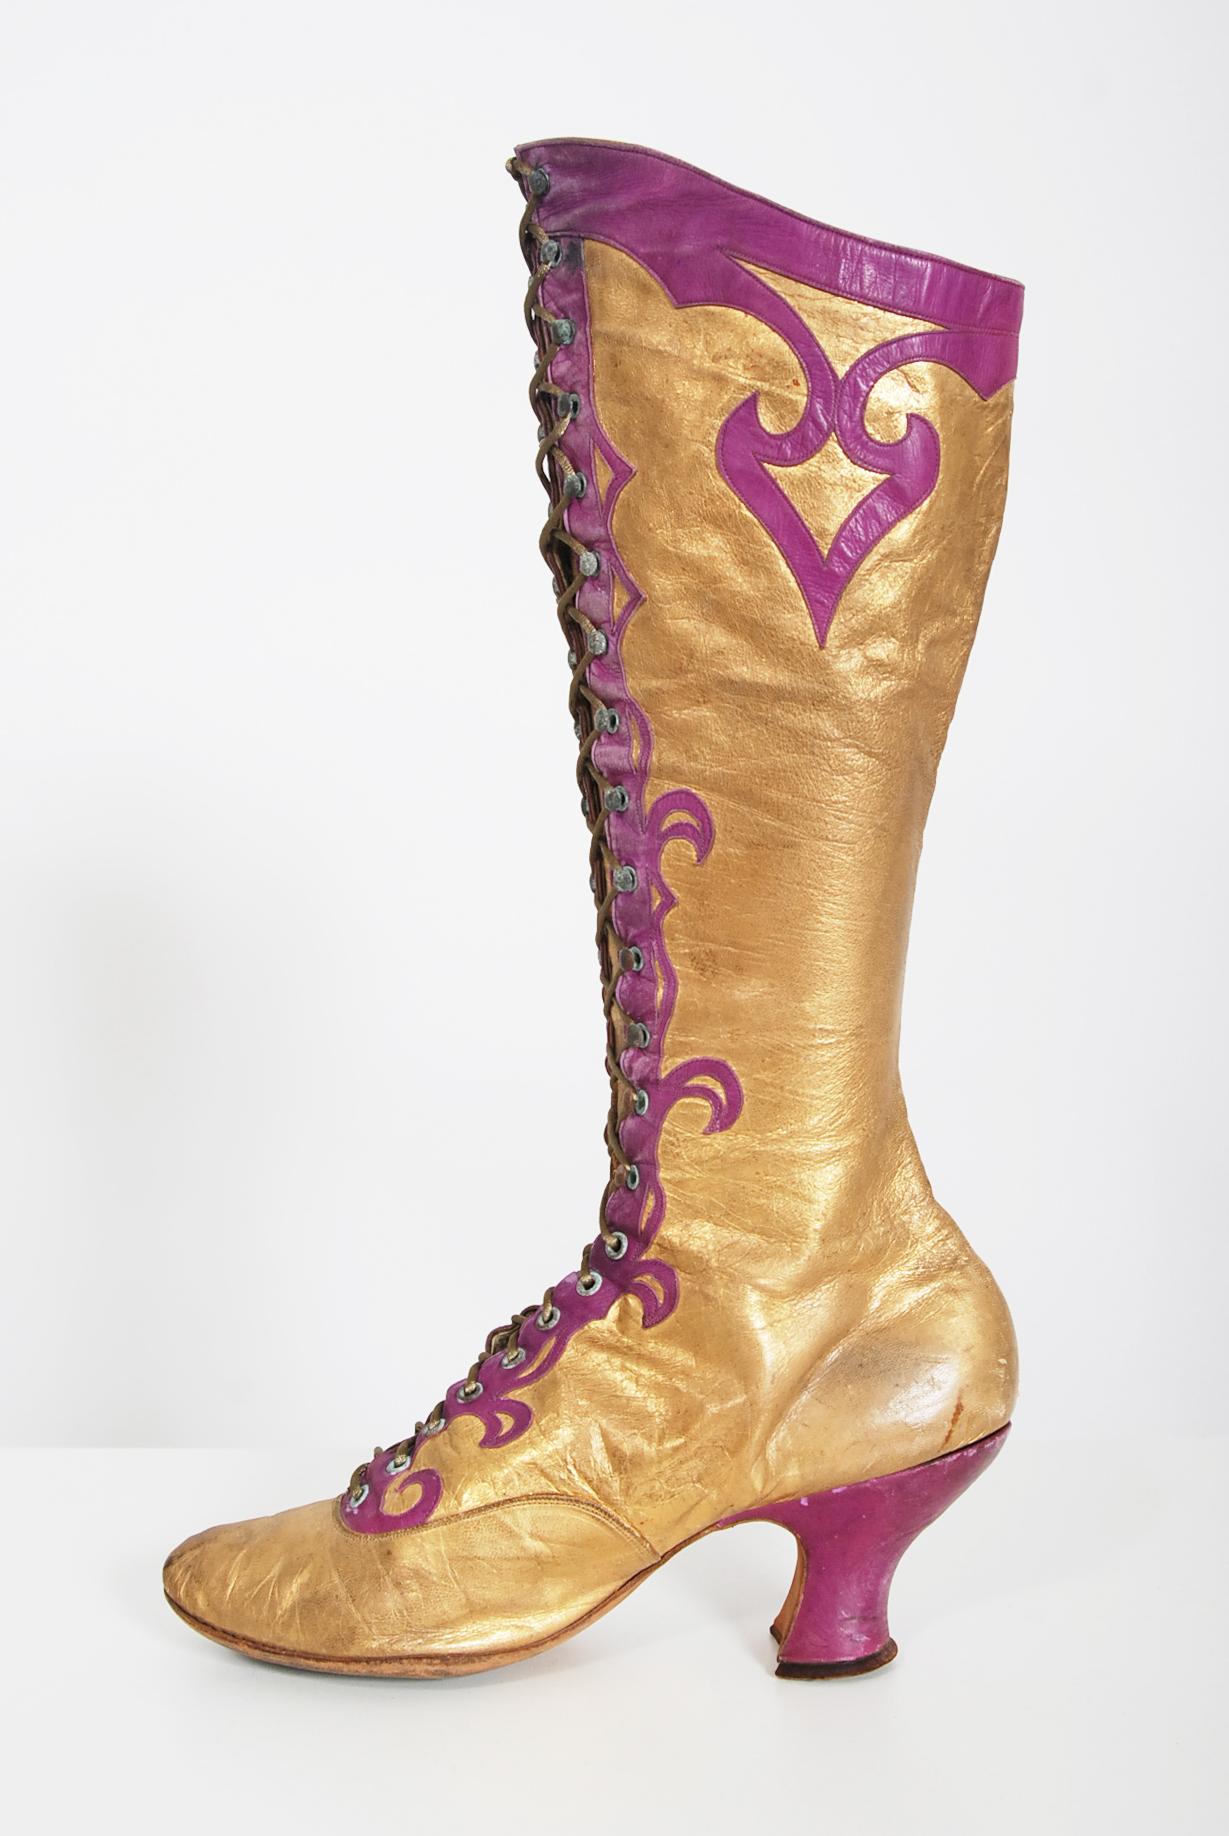 Atemberaubende und unglaublich schwer zu finden Paar Alfred J. Cammeyer antike Couture Stiefel aus der 1890er Ära der Mode gemacht. Die Schuhe können durch die Kombination von Stil und älterem Cammeyer Label auf diese Zeit datiert werden. Während